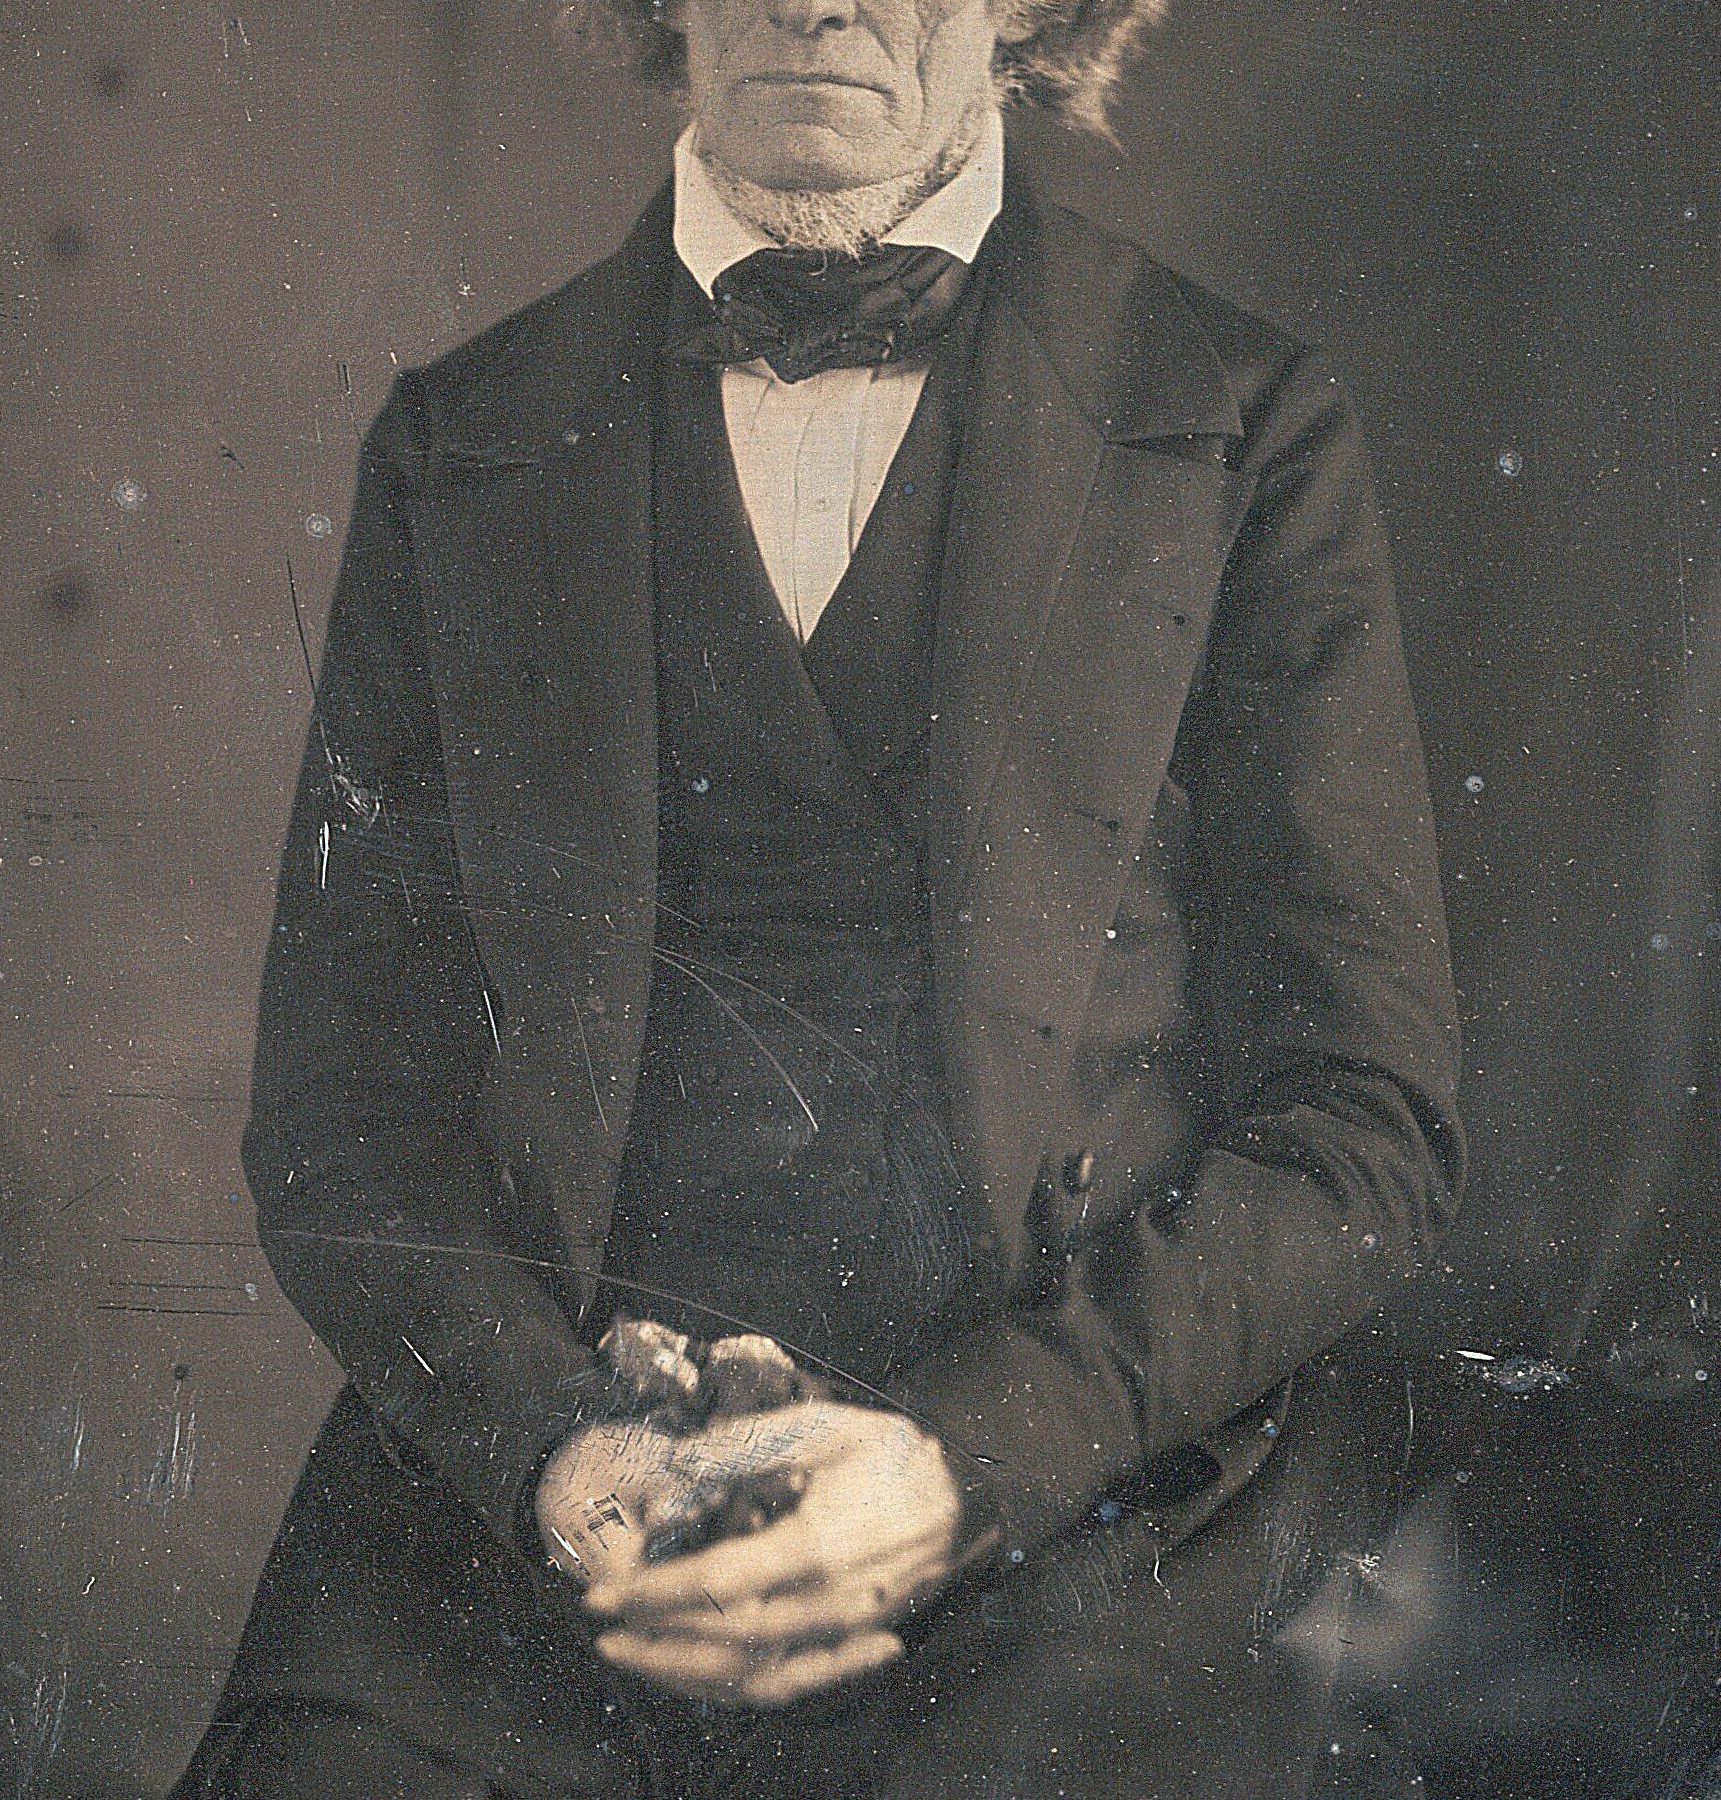 John Calhoun by Brady